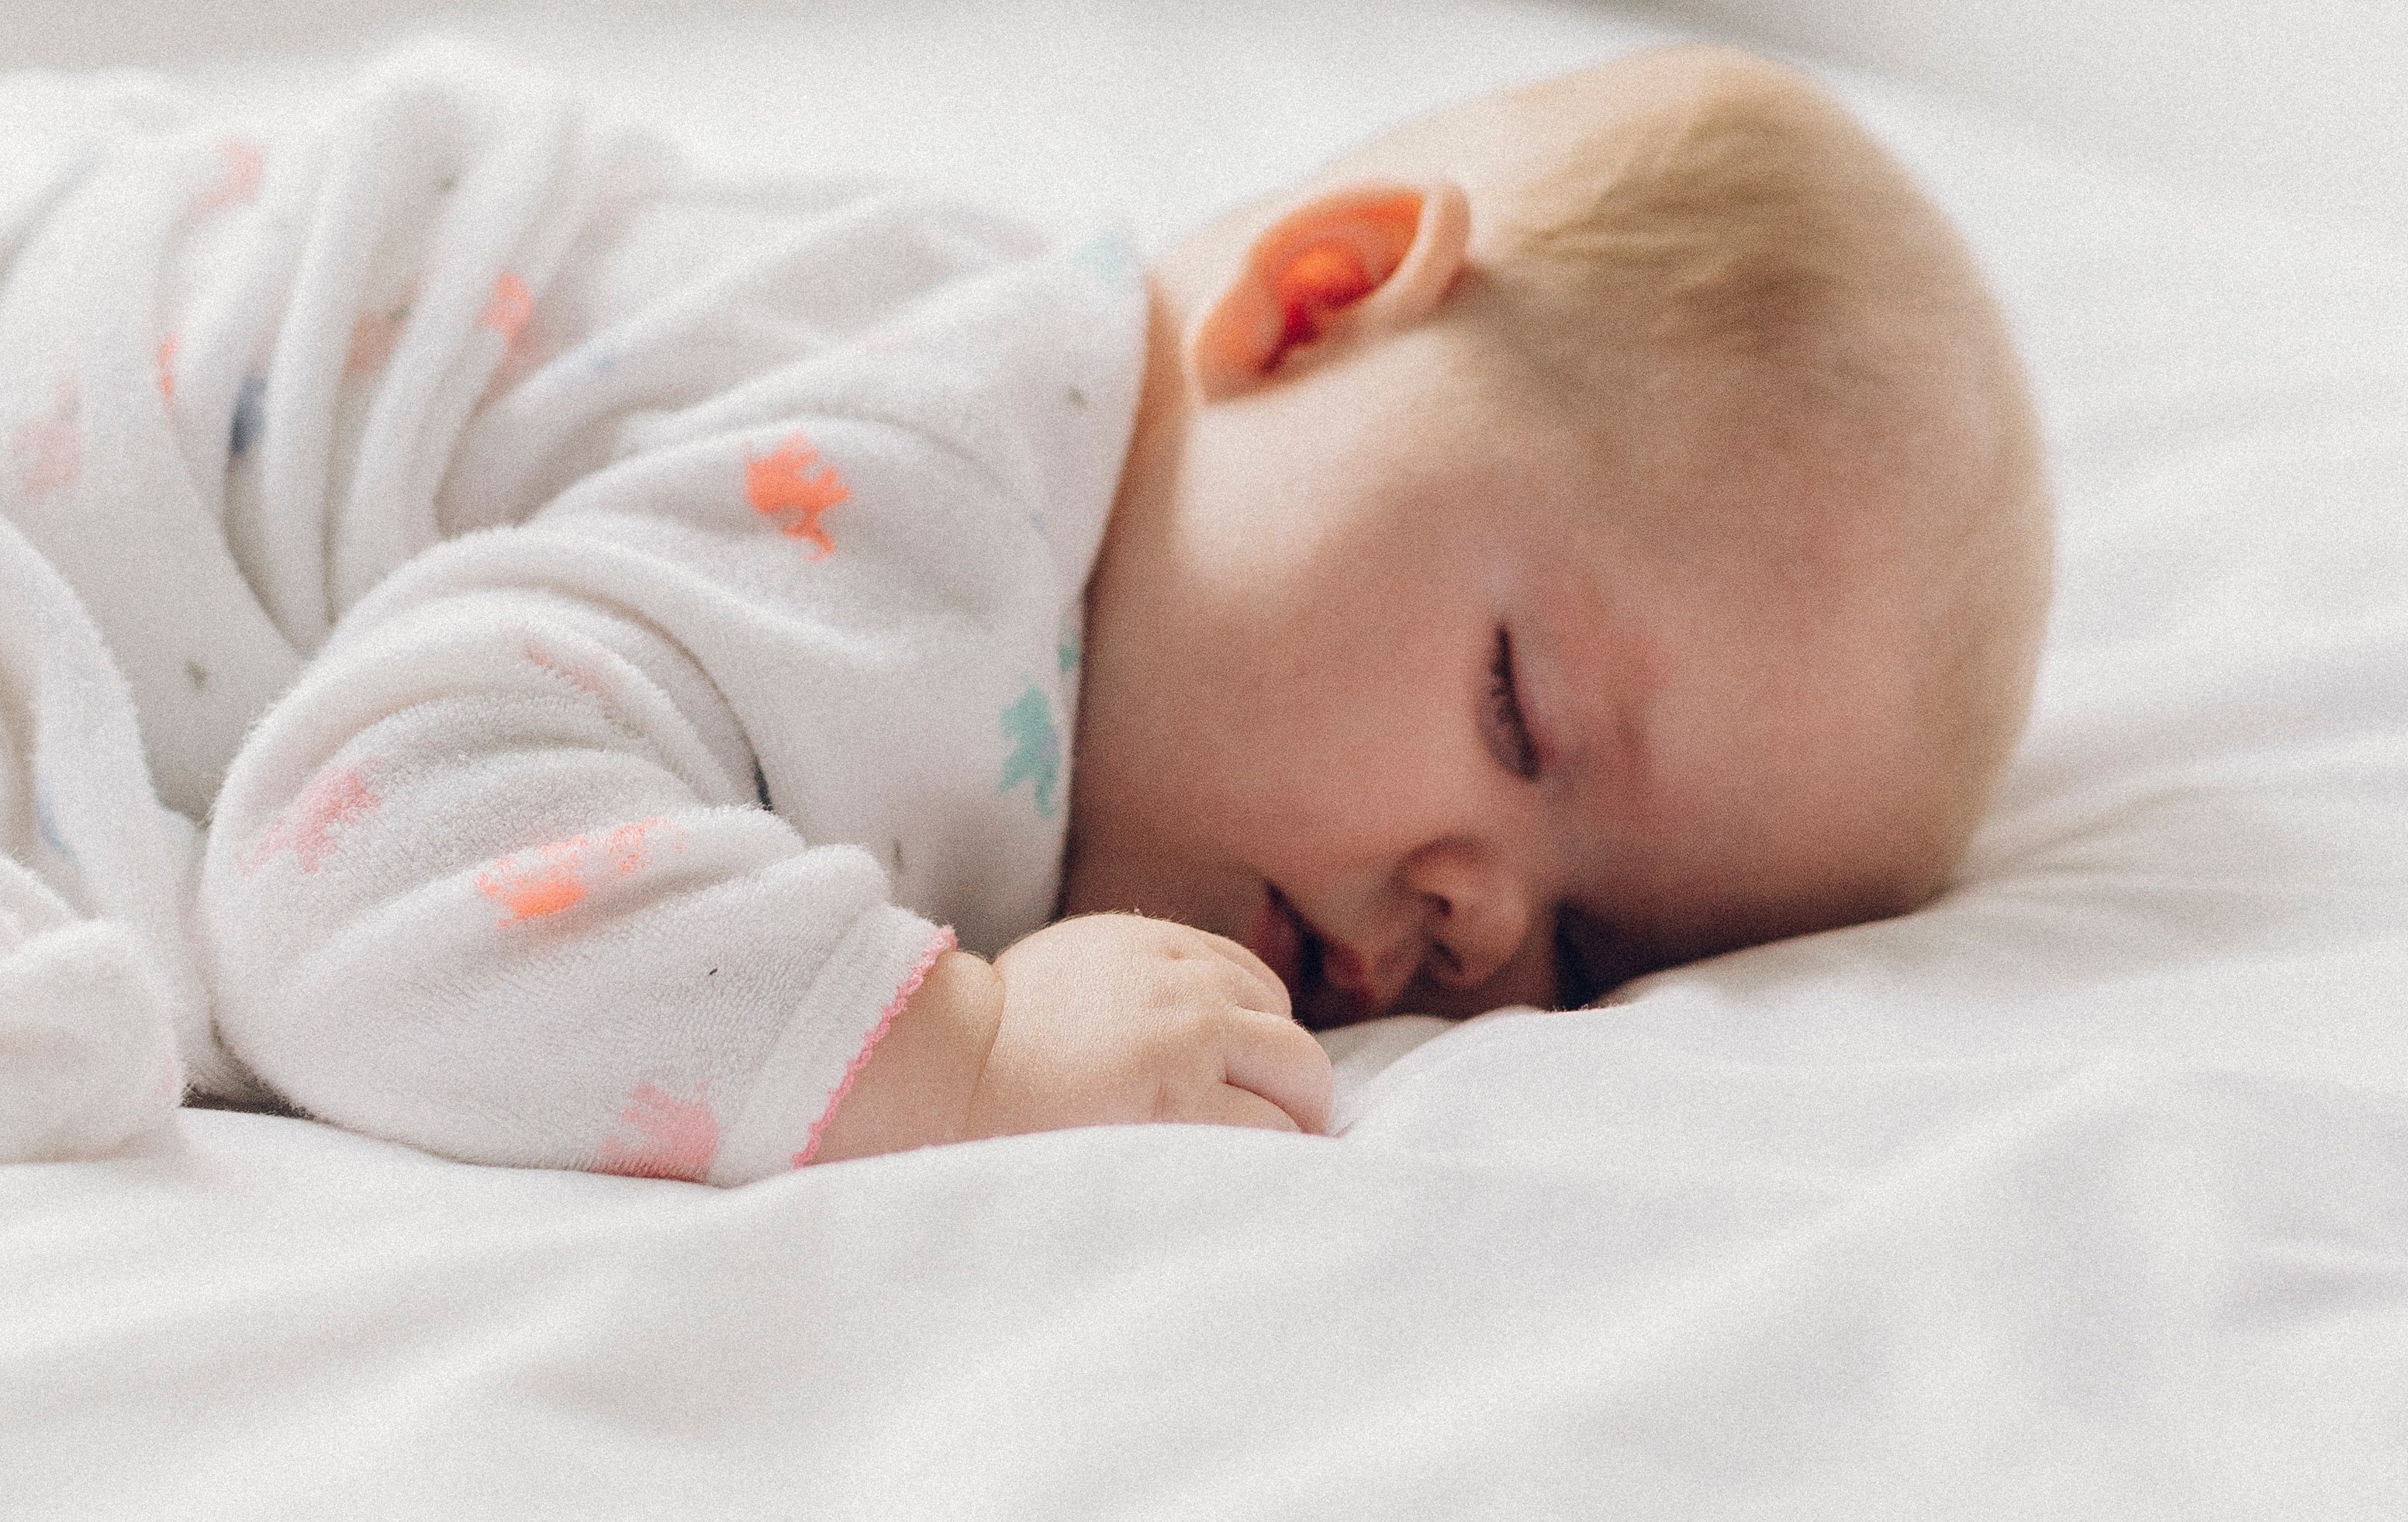 Das Baby schlief fest, aber etwas an seiner Körperhaltung beunruhigte die Mutter | Quelle: Unsplash